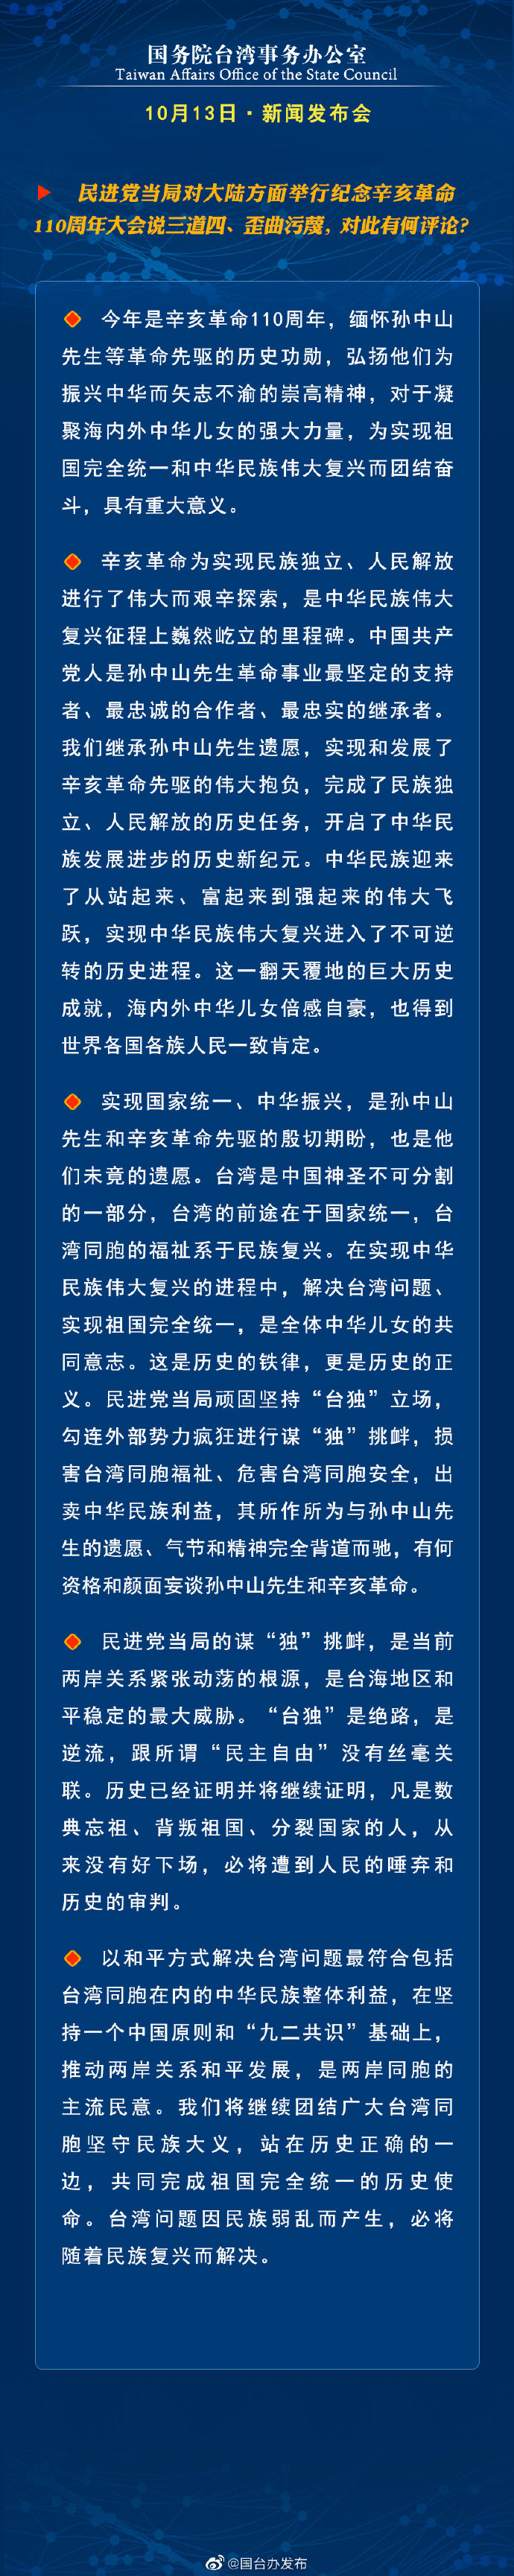 国务院台湾事务办公室10月13日·新闻发布会